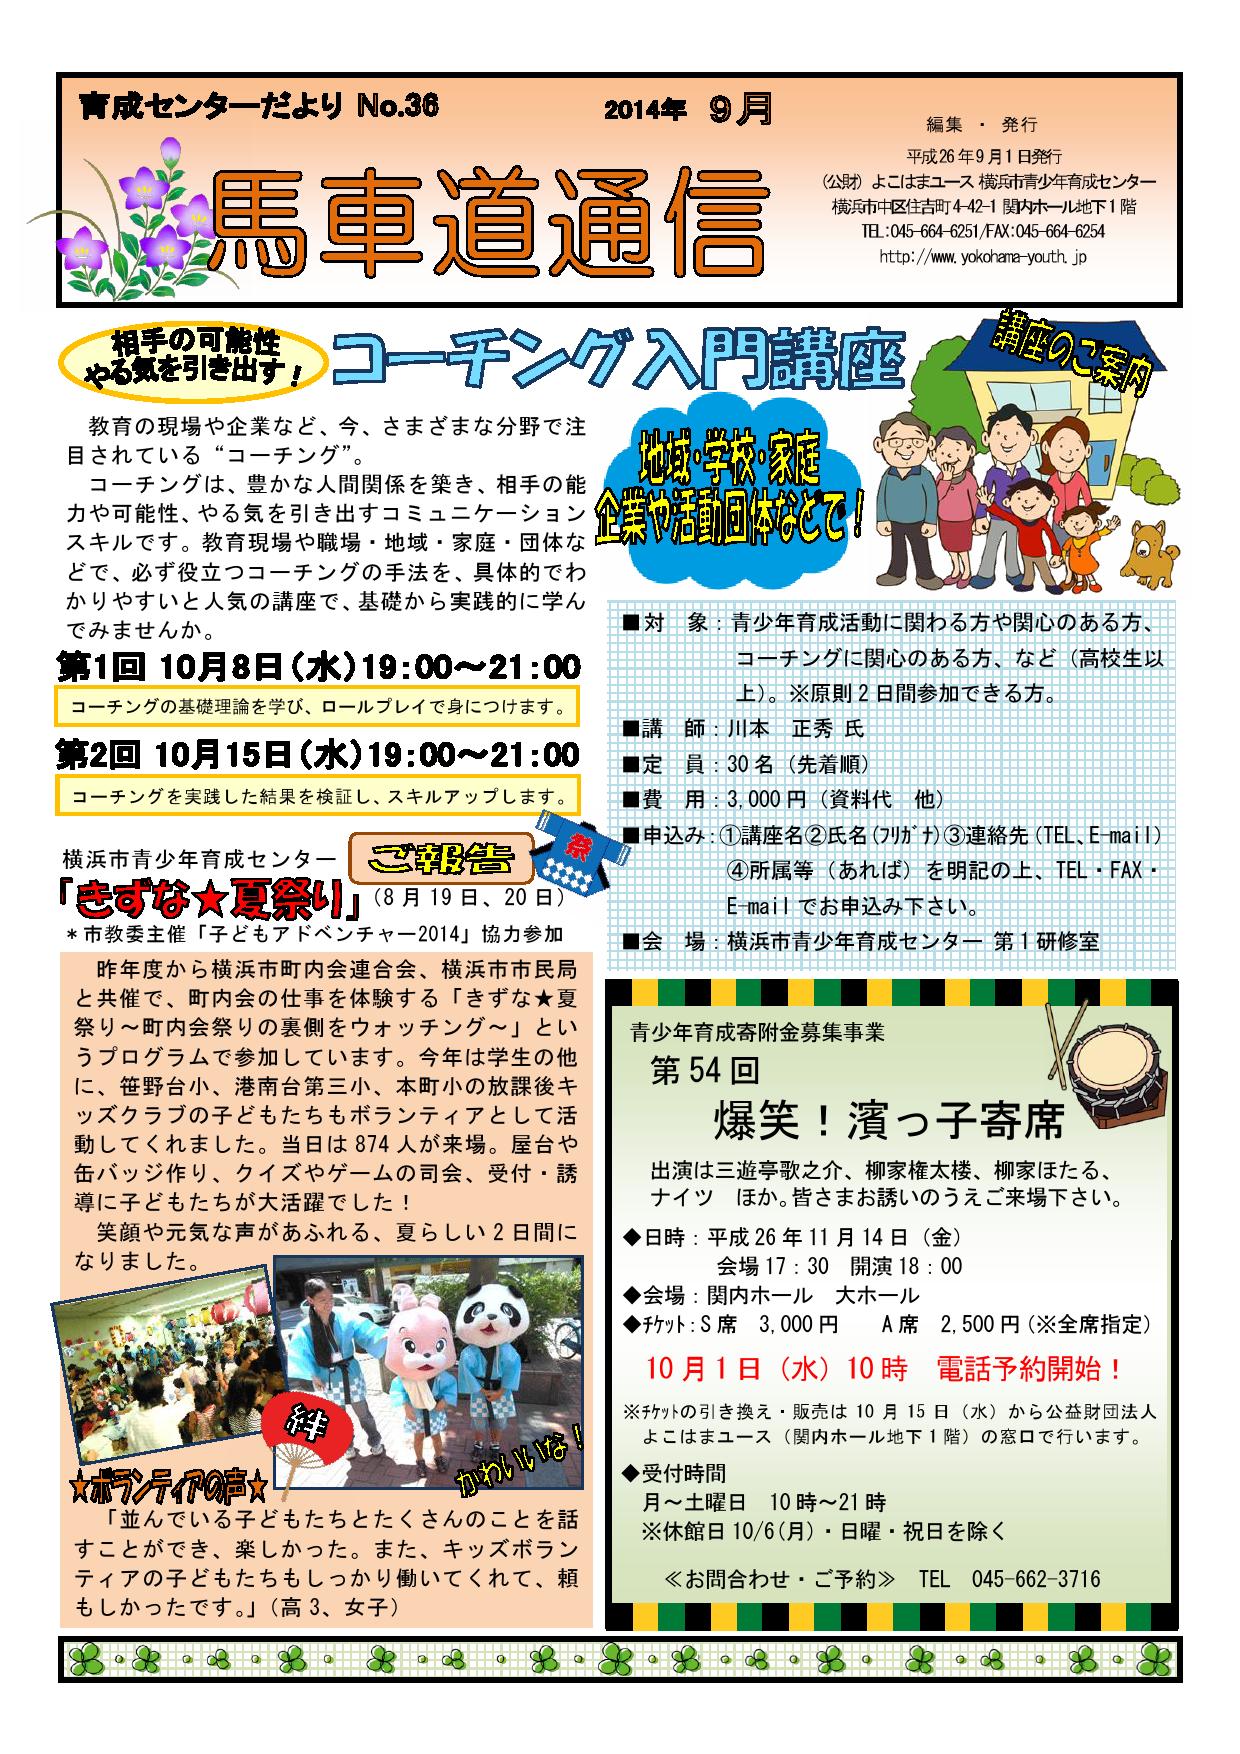 【WEB用】2014-9月号（No.37)馬車道通信